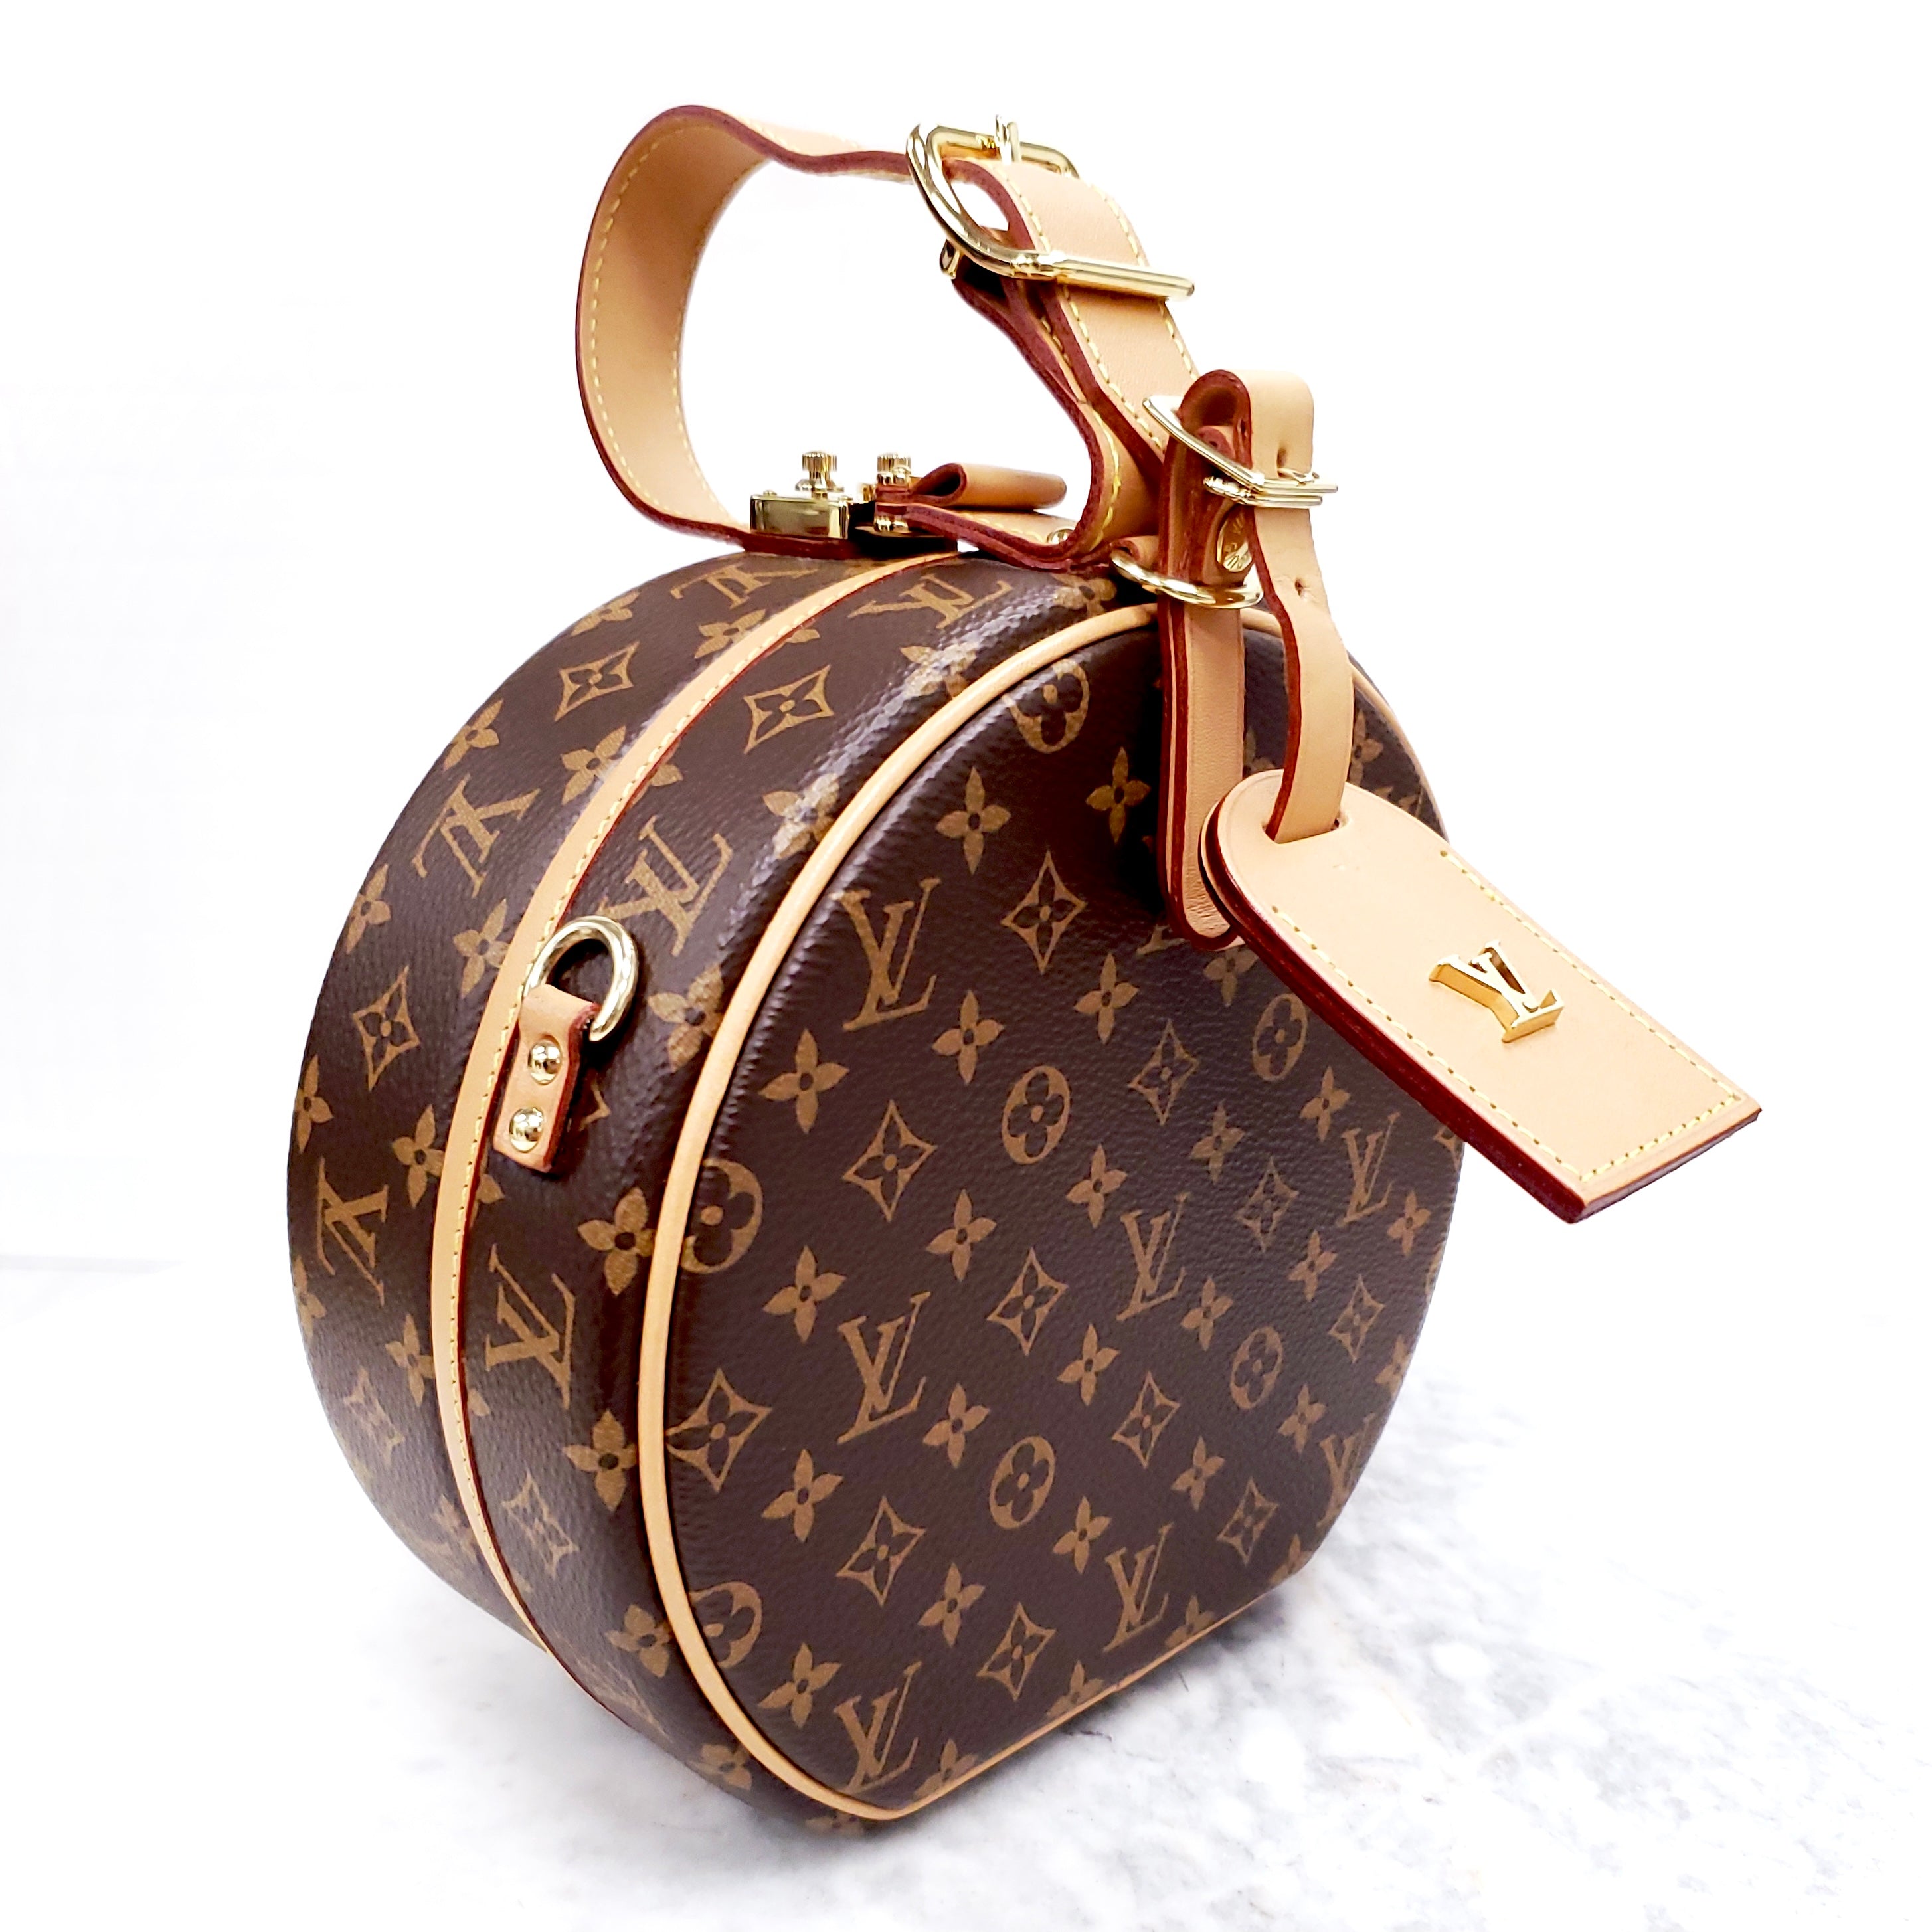 Freebies & Deals - AUTH NEW Louis Vuitton PETITE BOITE CHAPEAU Hat Box bag,  W/LV GIFT BOX, DUSTBAG!  #100authentic  #louisvuitton